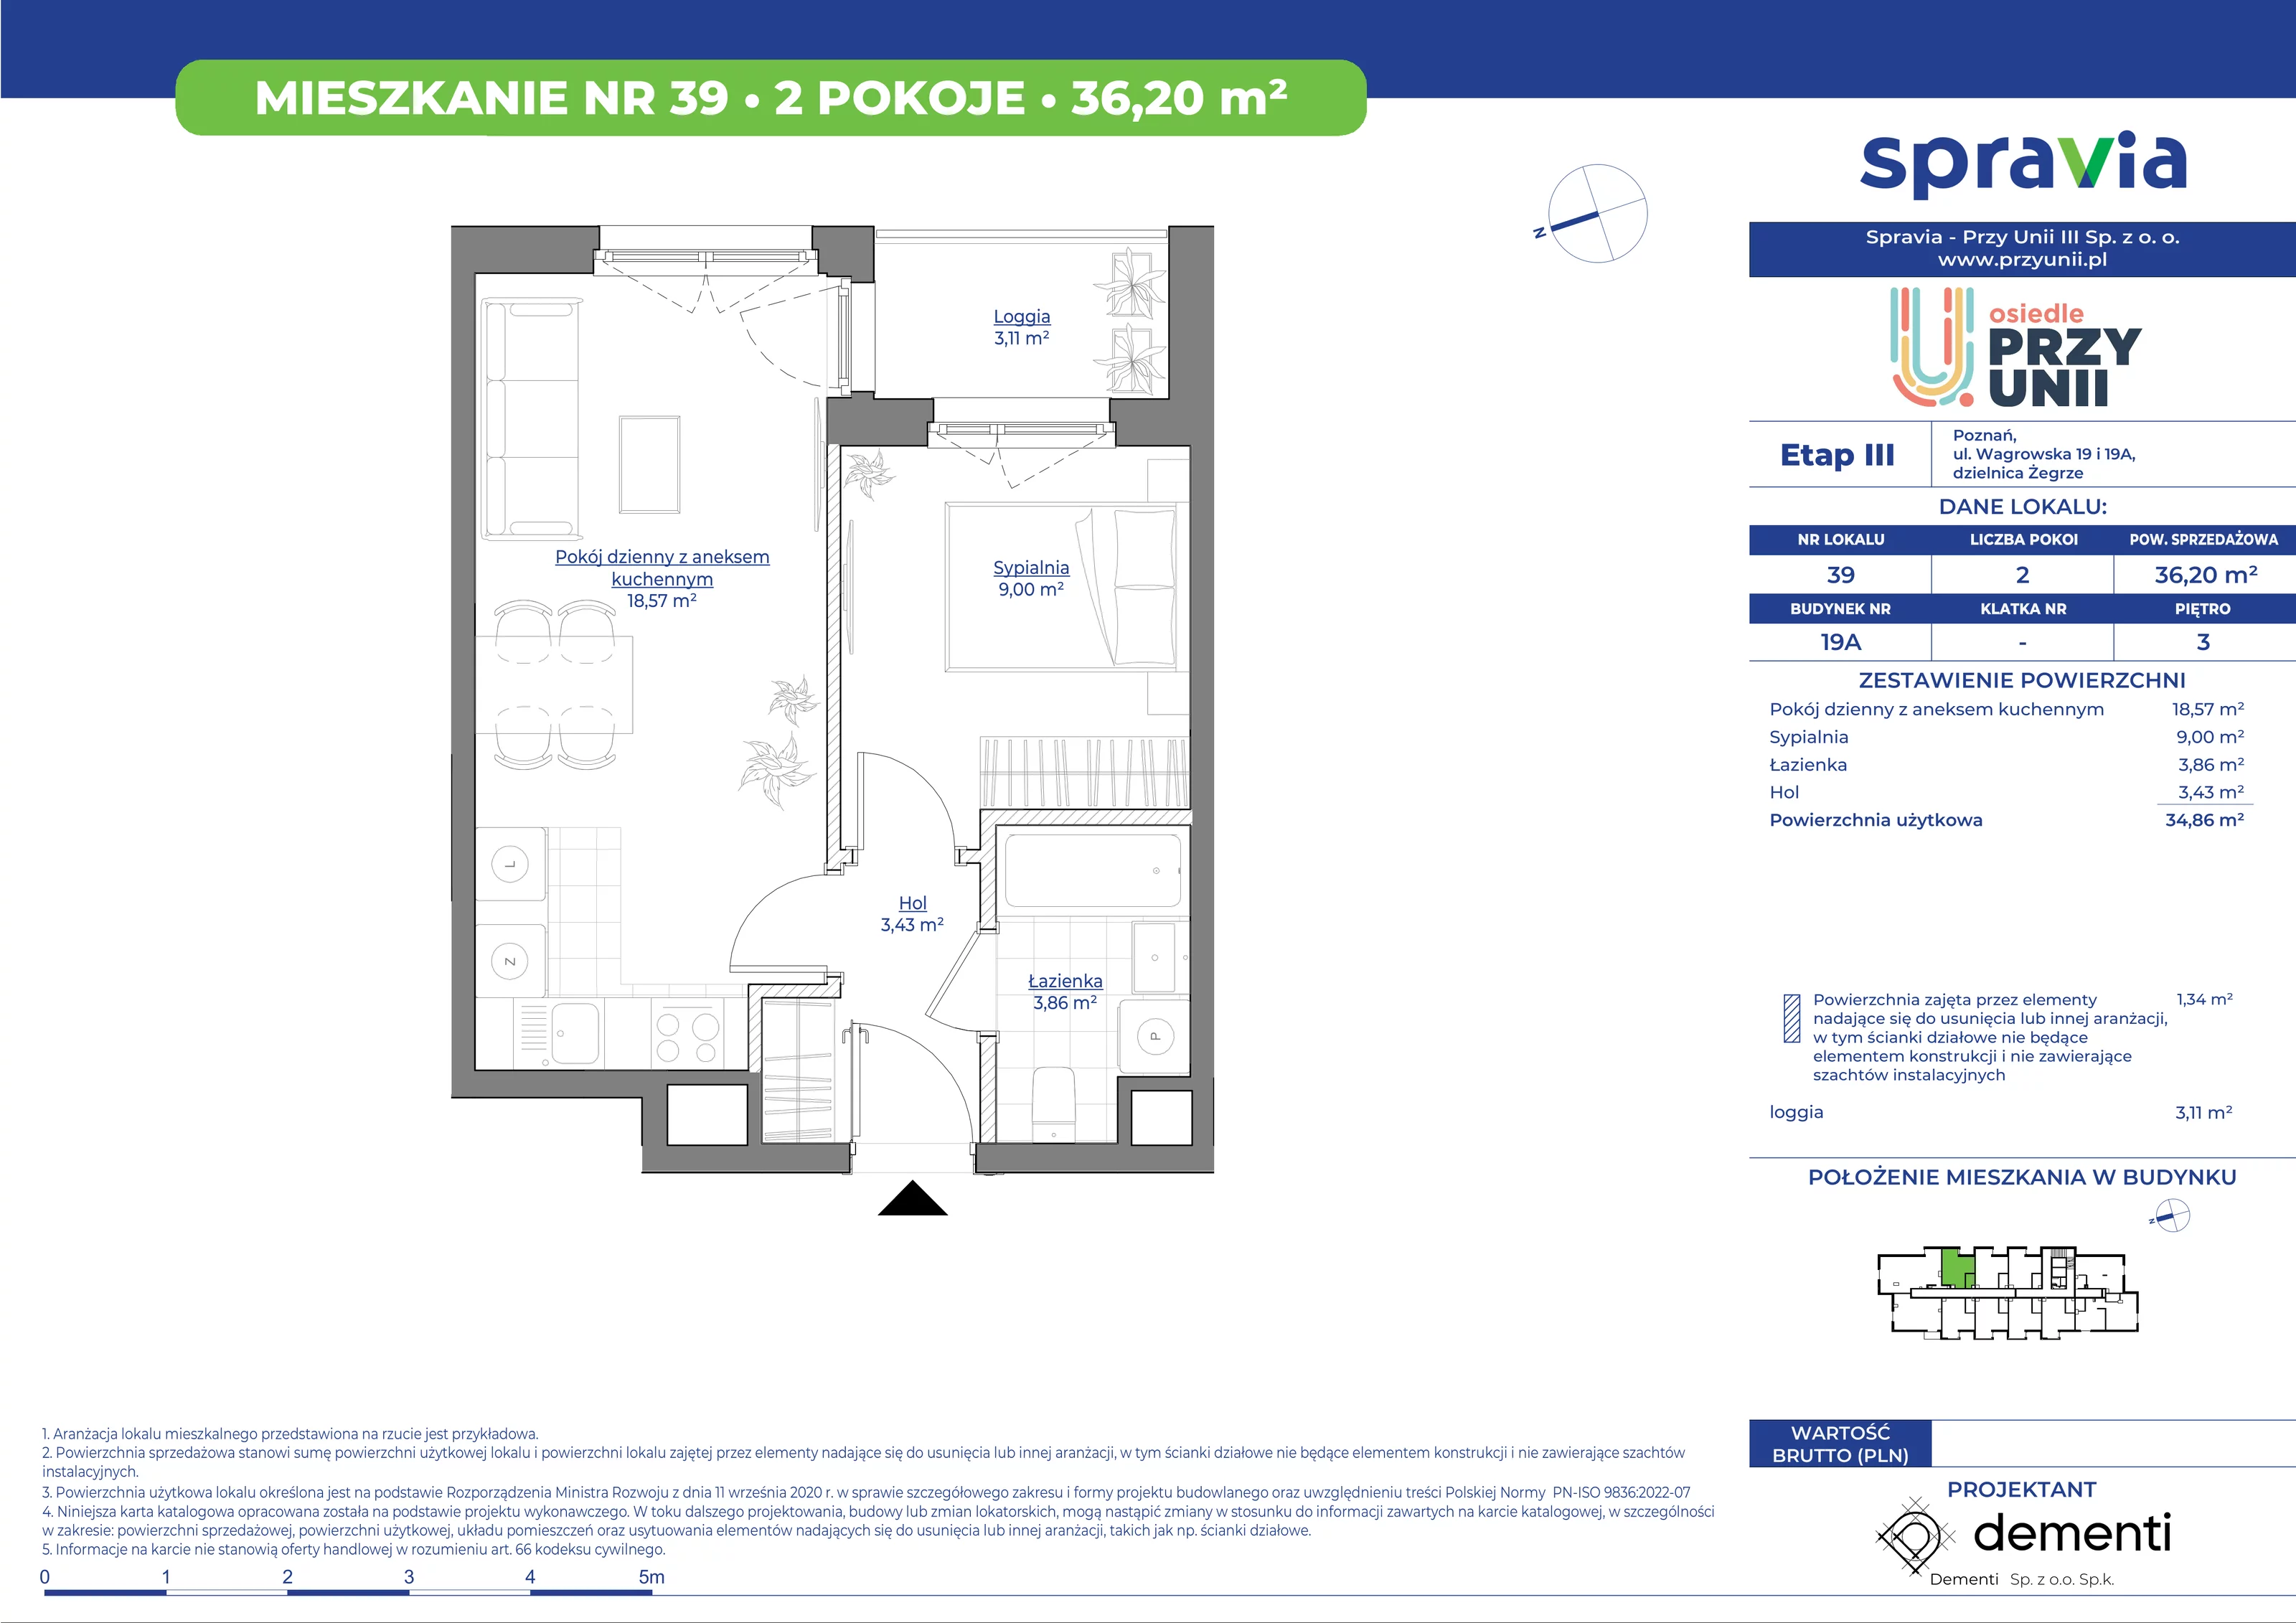 Mieszkanie 36,20 m², piętro 3, oferta nr 19A-39, Przy Unii, Poznań, Żegrze, ul. Wagrowska 19 i 19A